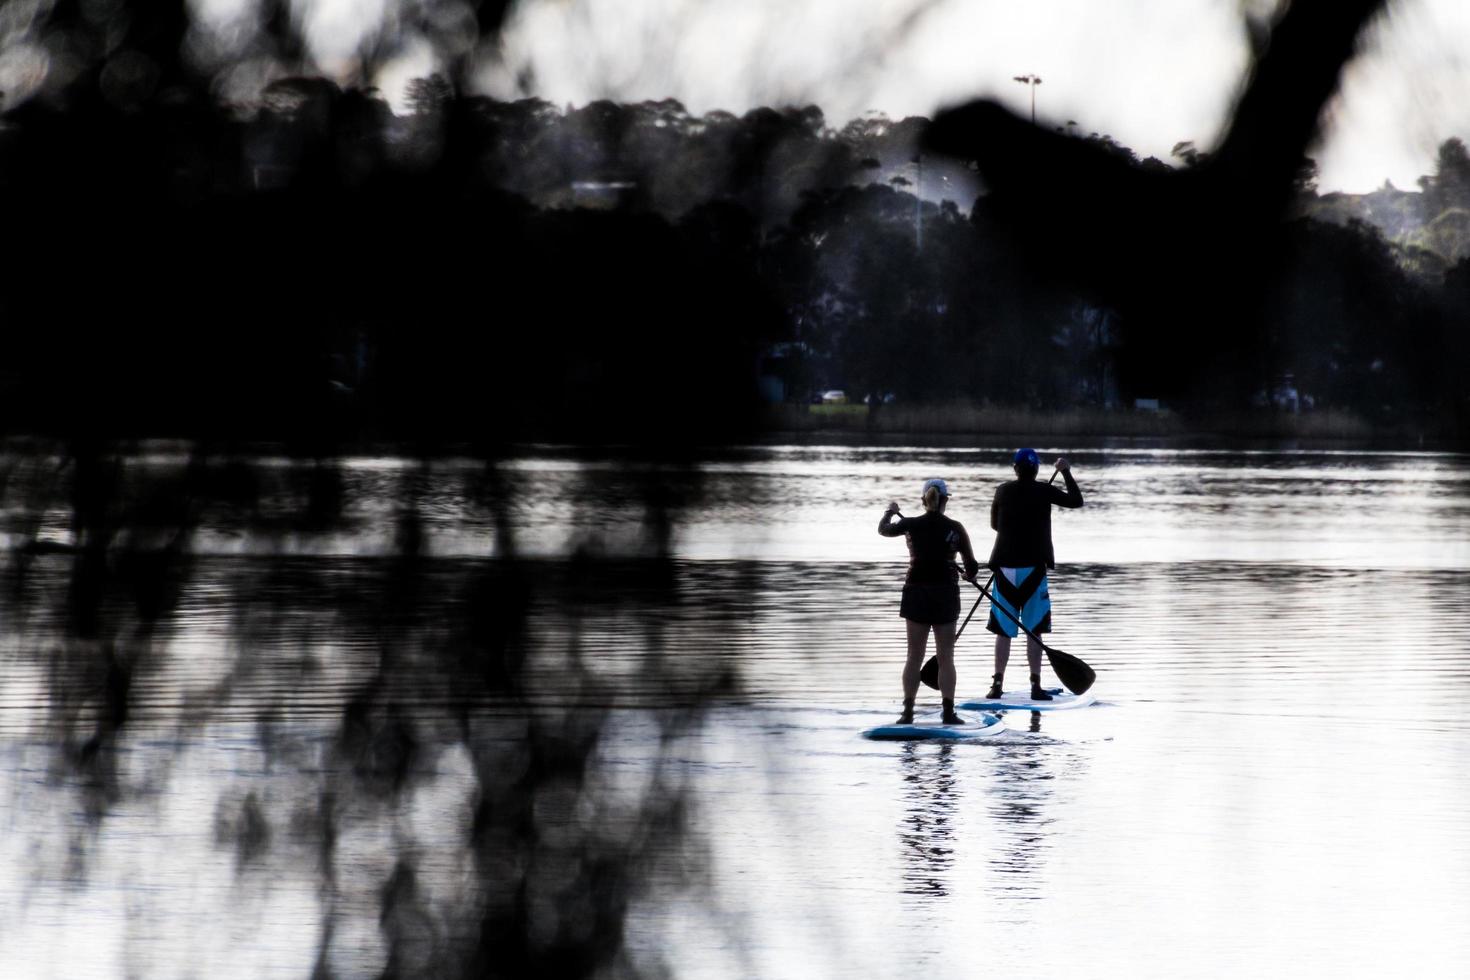 sydney, austrália, 2020 - duas pessoas stand up paddleboarding foto